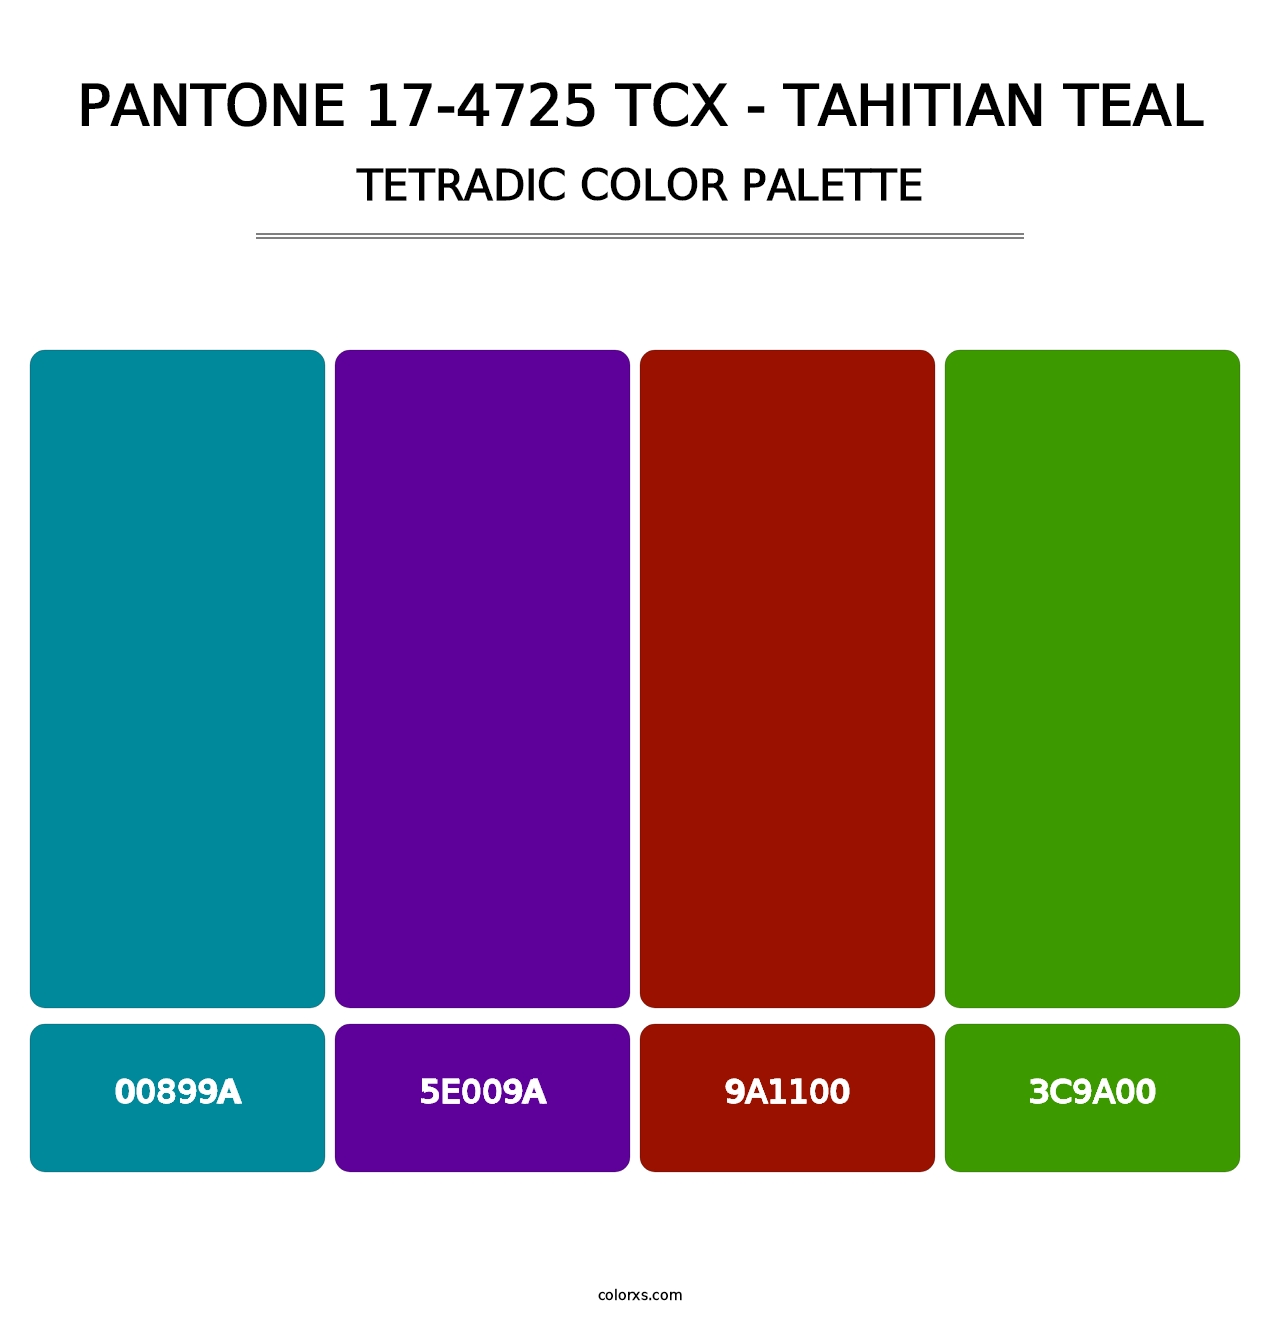 PANTONE 17-4725 TCX - Tahitian Teal - Tetradic Color Palette